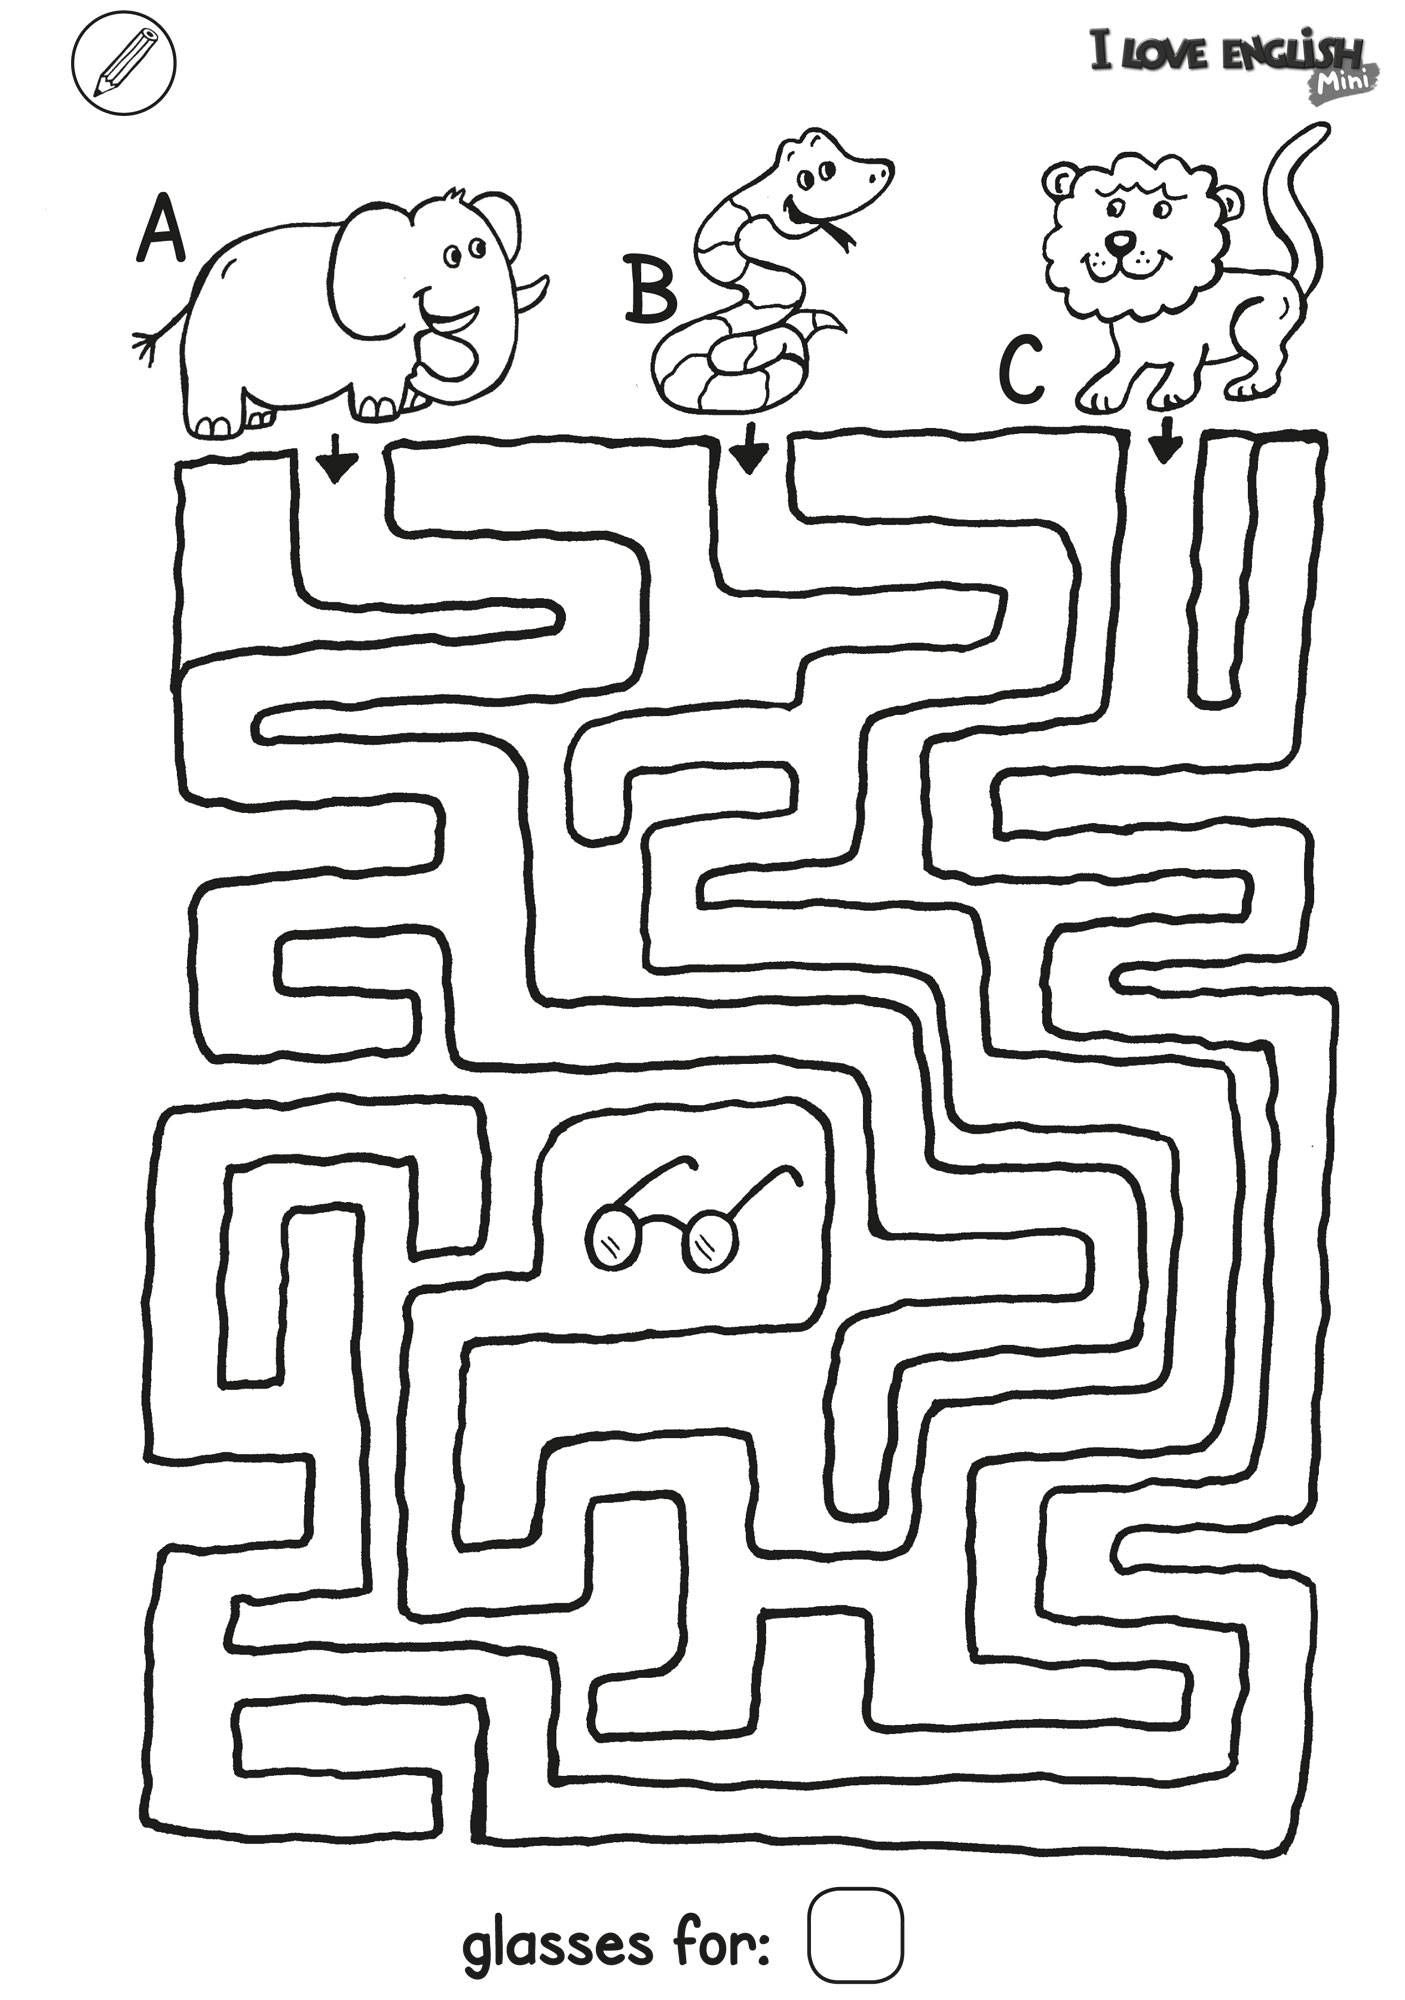 Ausmalbild Labyrinthe Für Kinder: I Love English Mini bei Labyrinth Ausdrucken